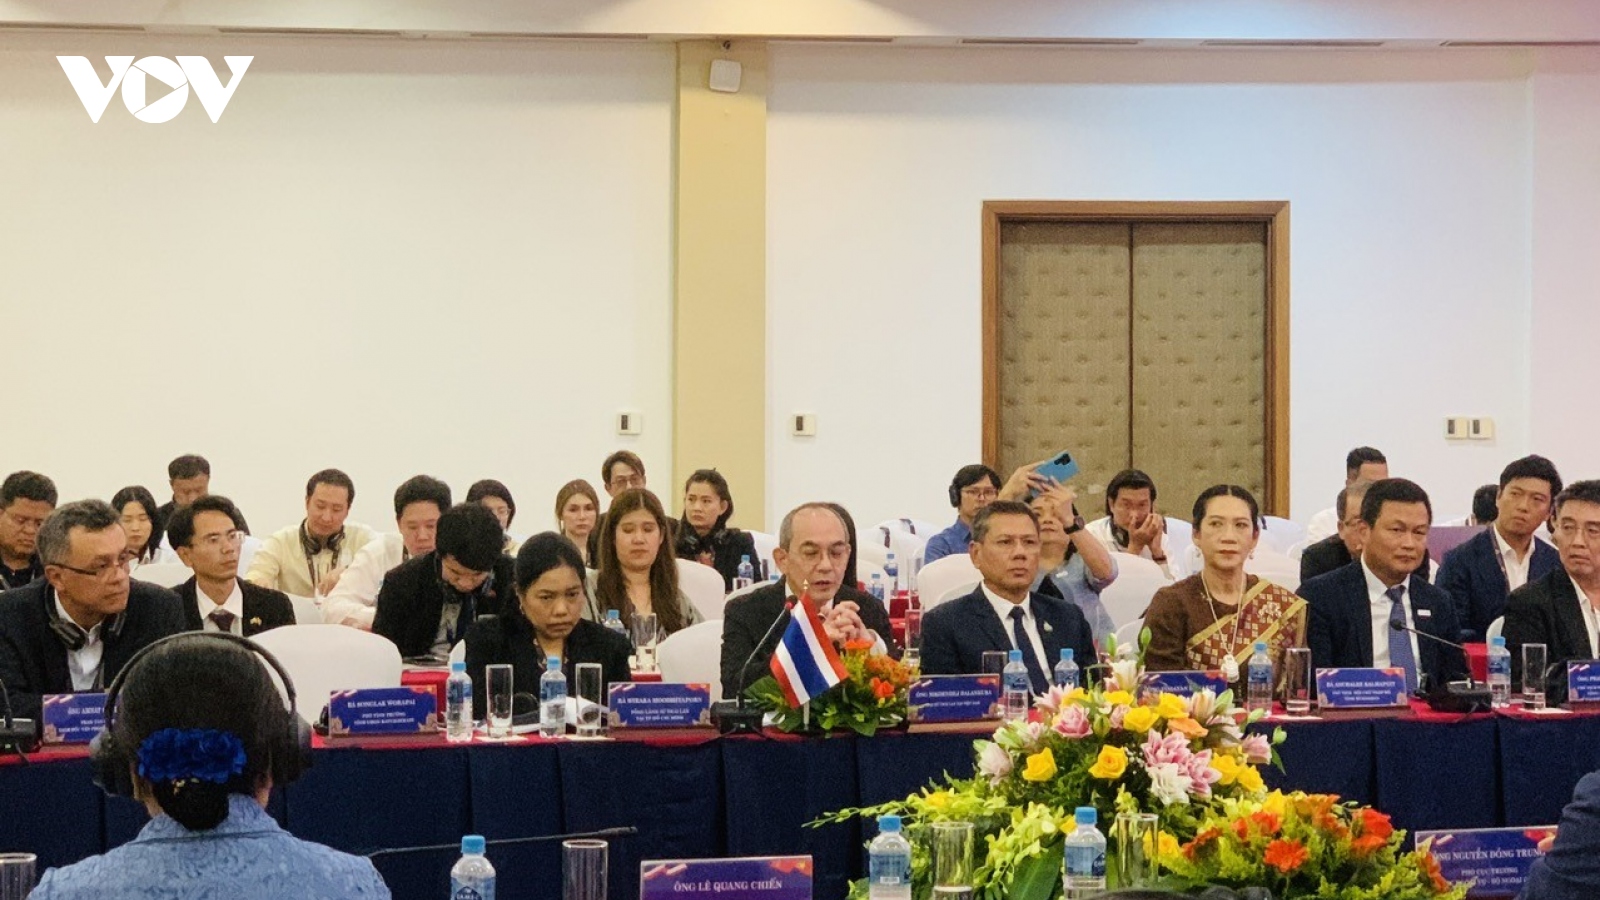 Quảng Trị - Điểm hội tụ và hợp tác của Thái Lan trên Hành lang kinh tế Đông Tây